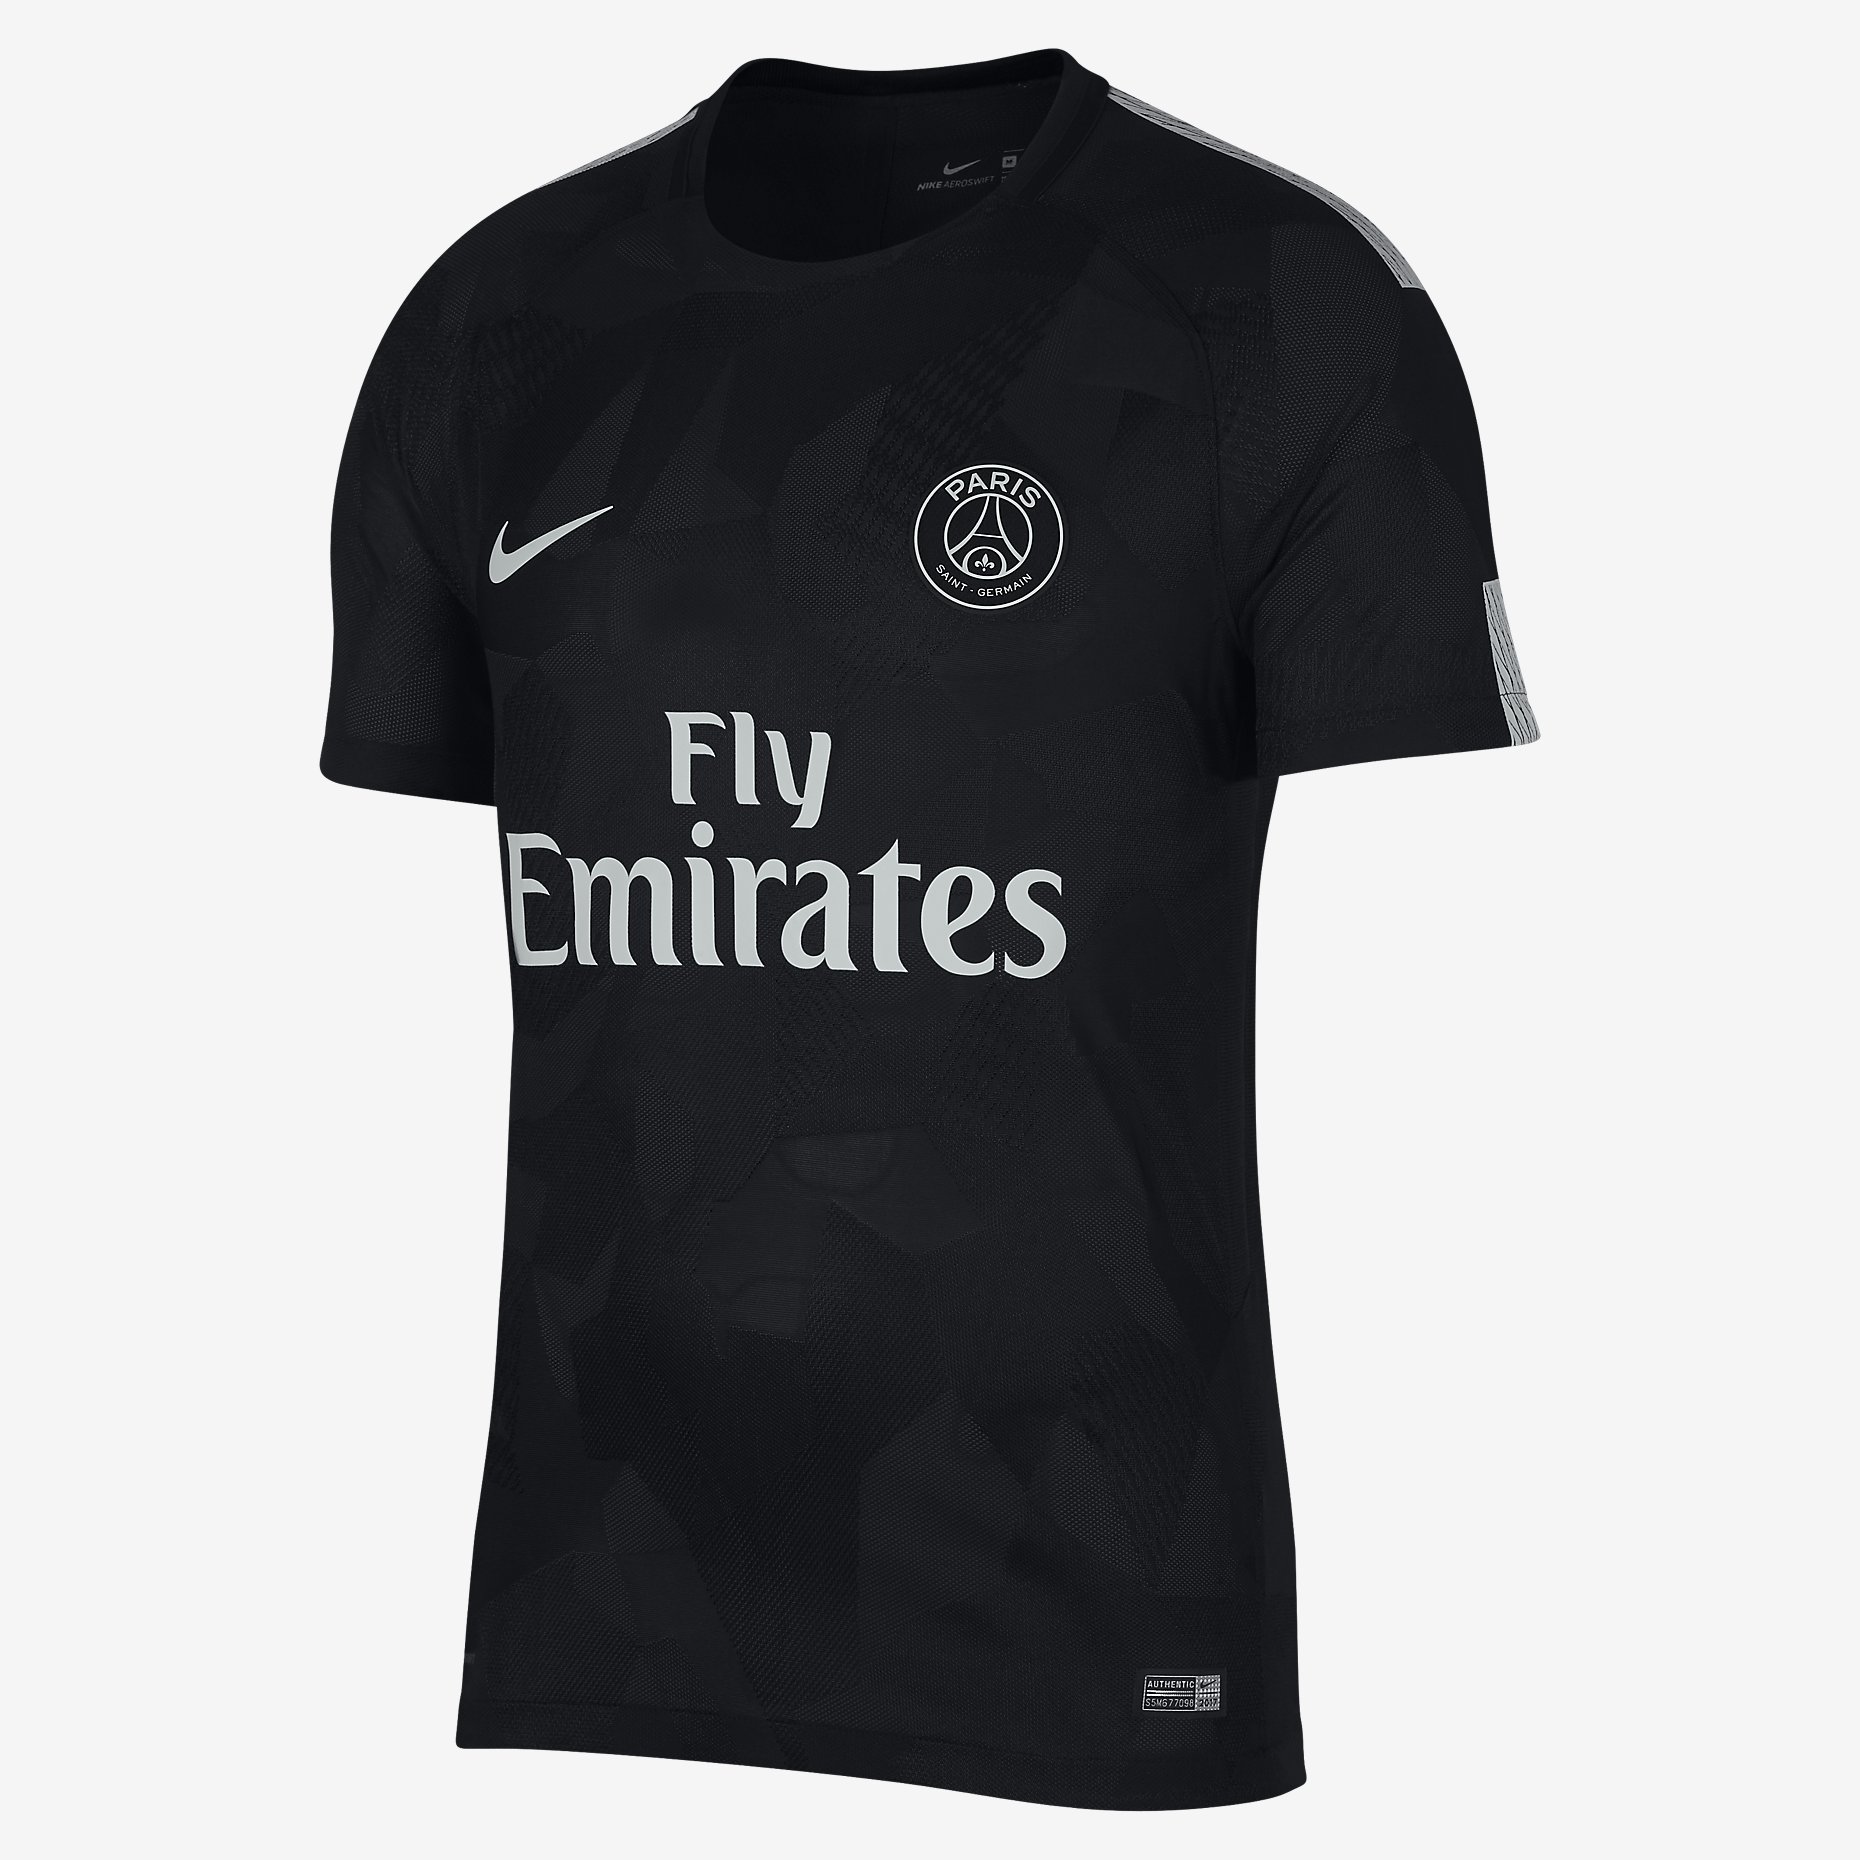 Paris Saint-Germain 17/18 Nike Third Kit | 17/18 Kits ...